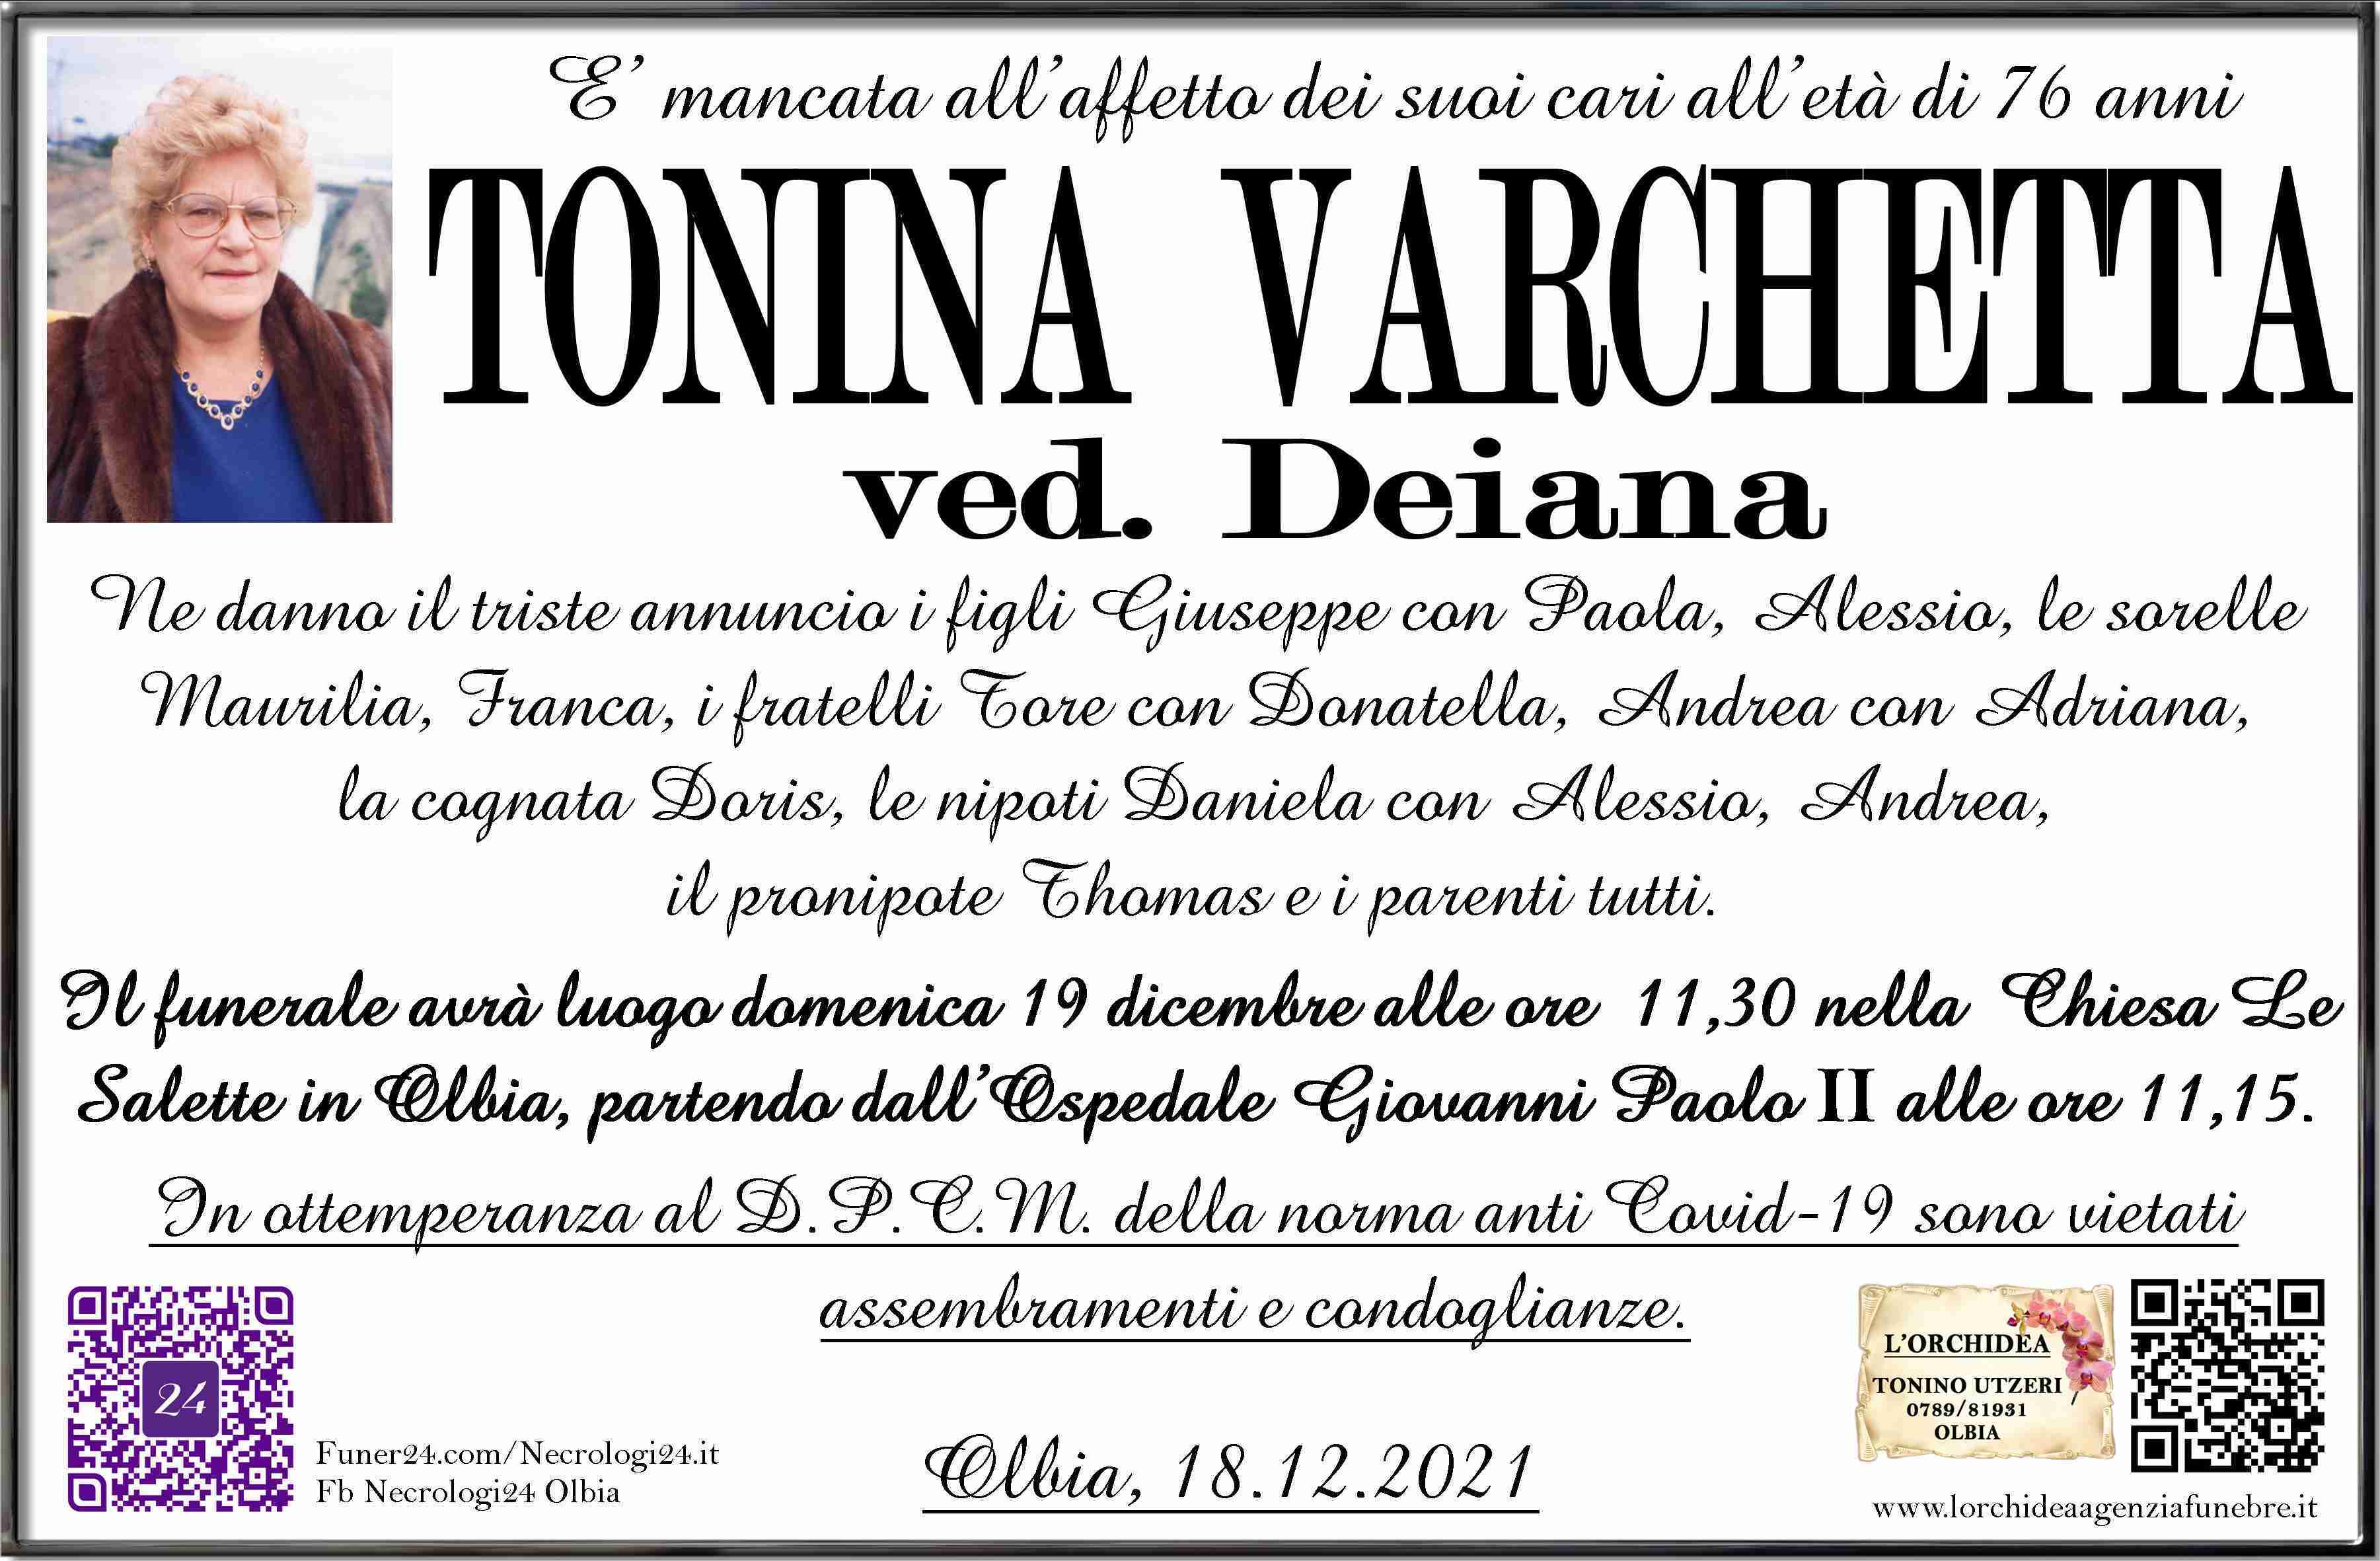 Tonina Varchetta